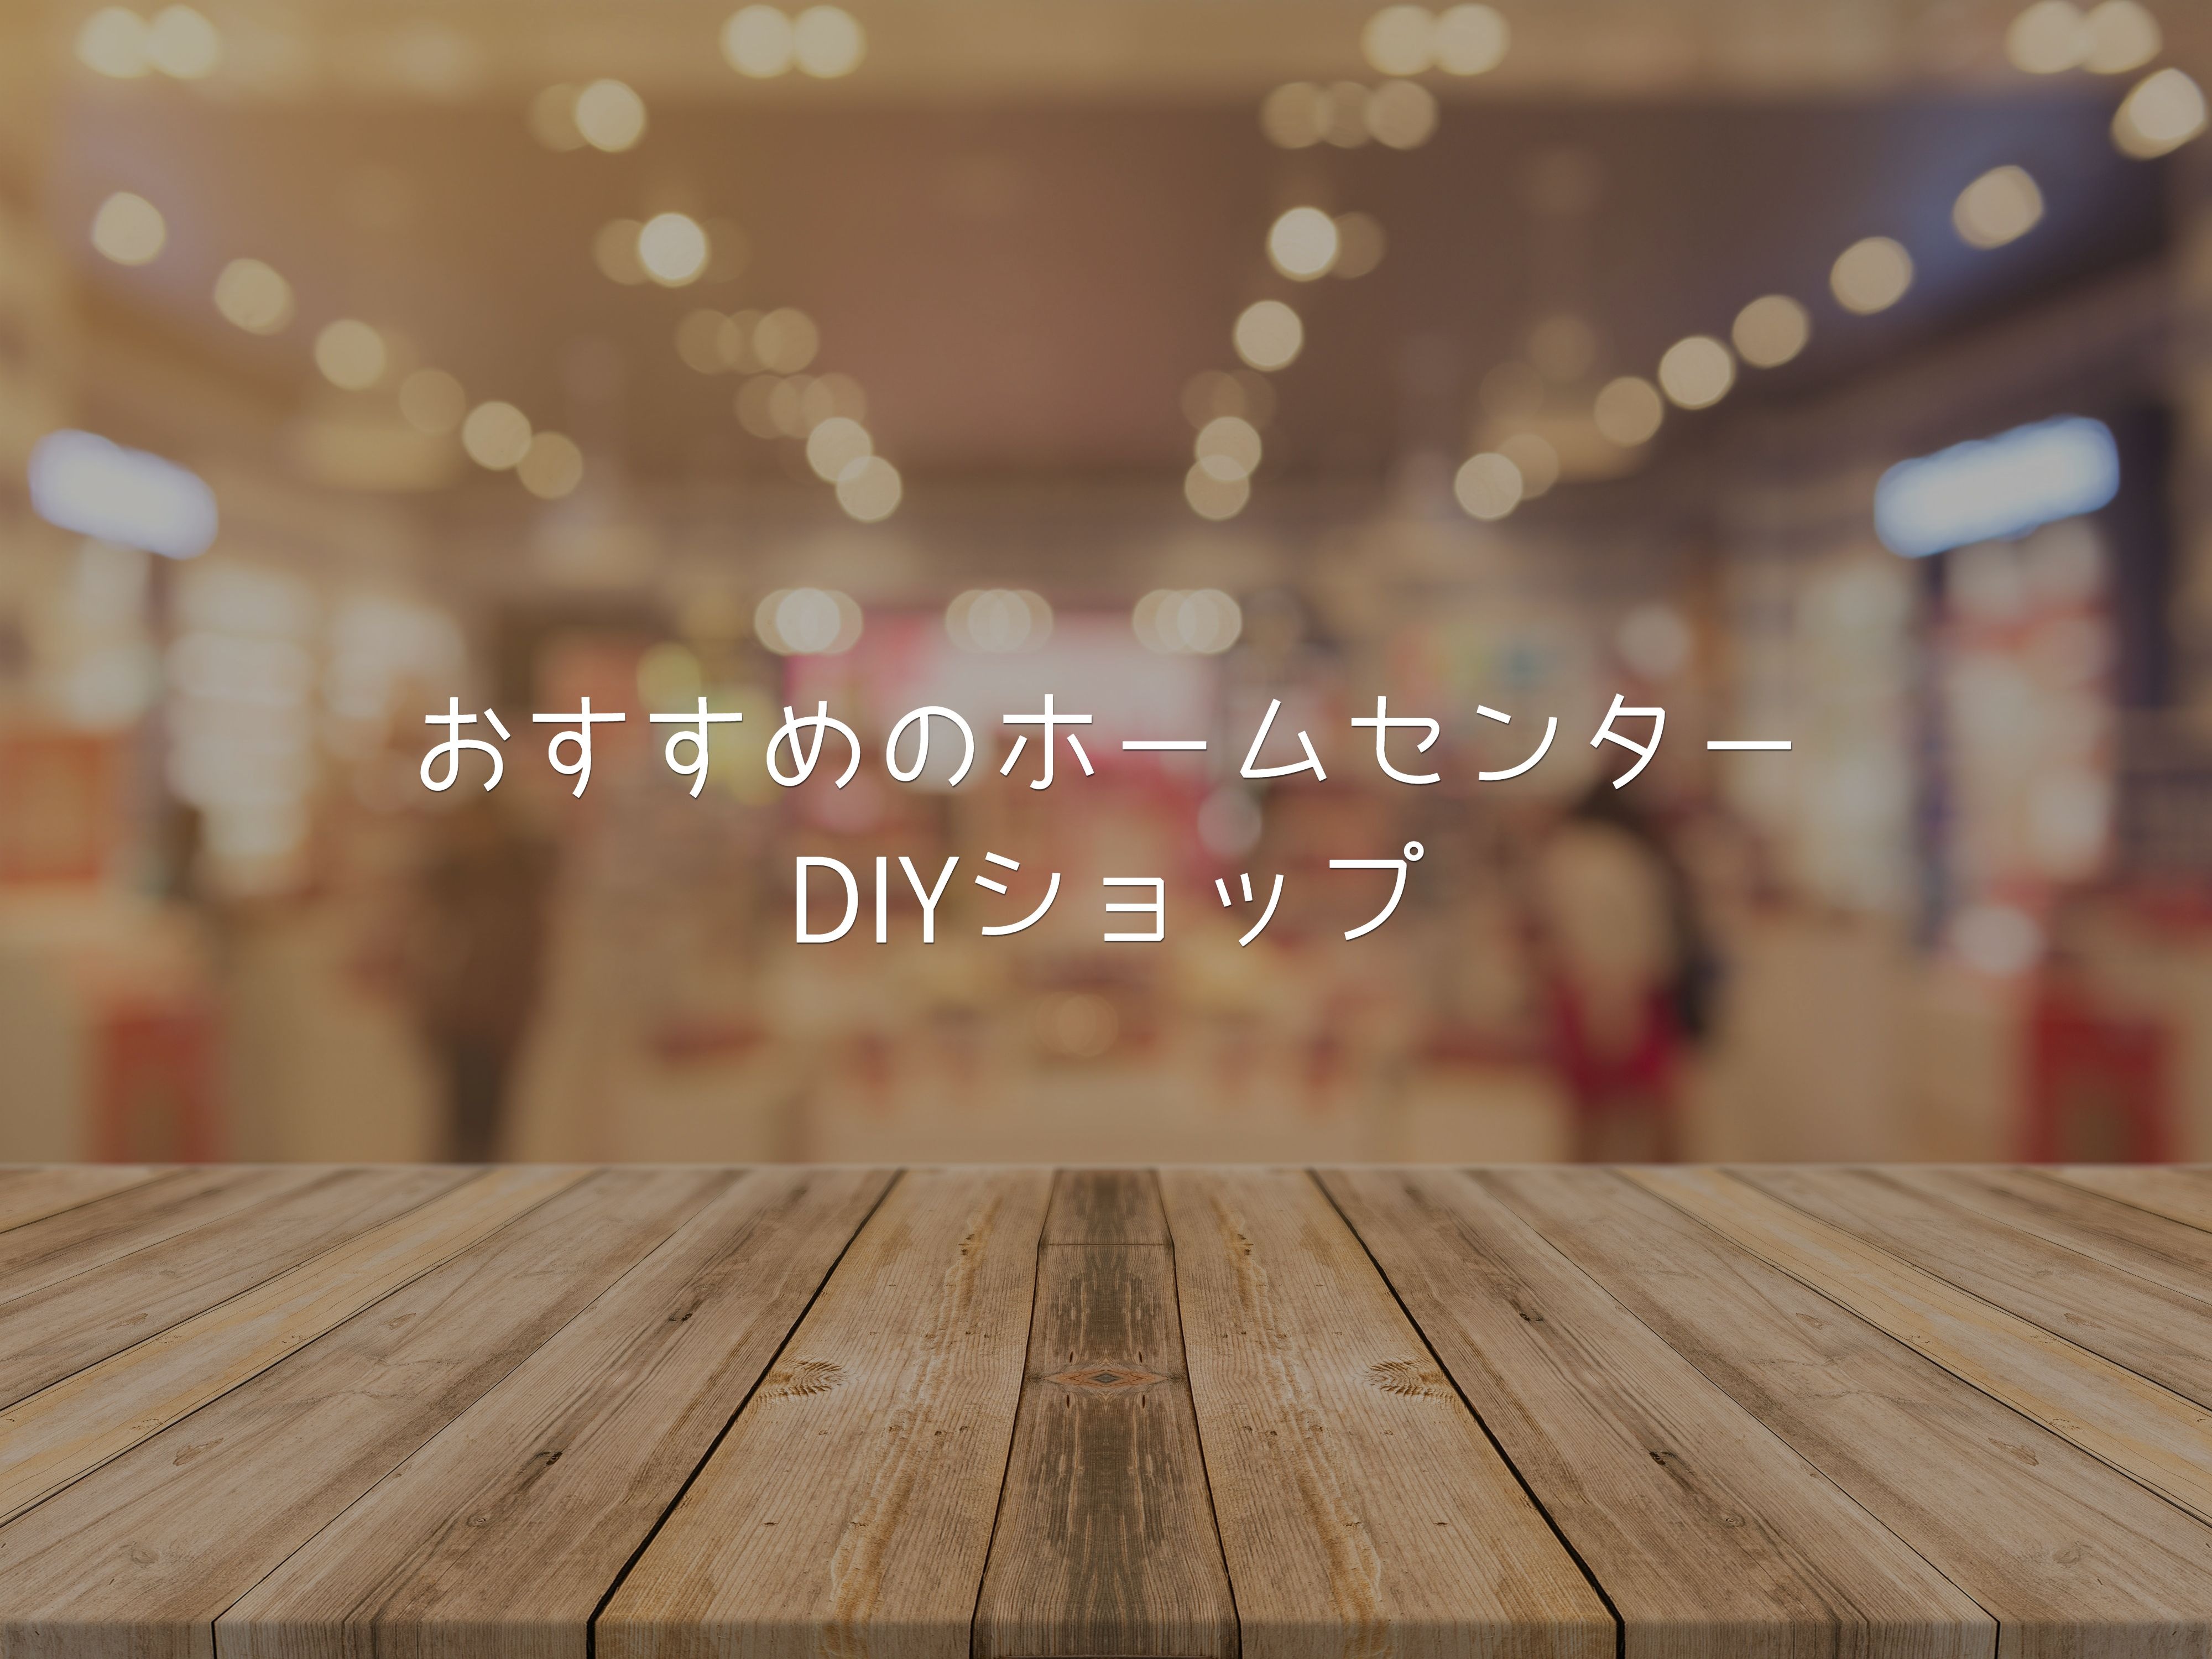 福岡 九州 で人気のホームセンター Diyショップおすすめ情報 Diy Magazine